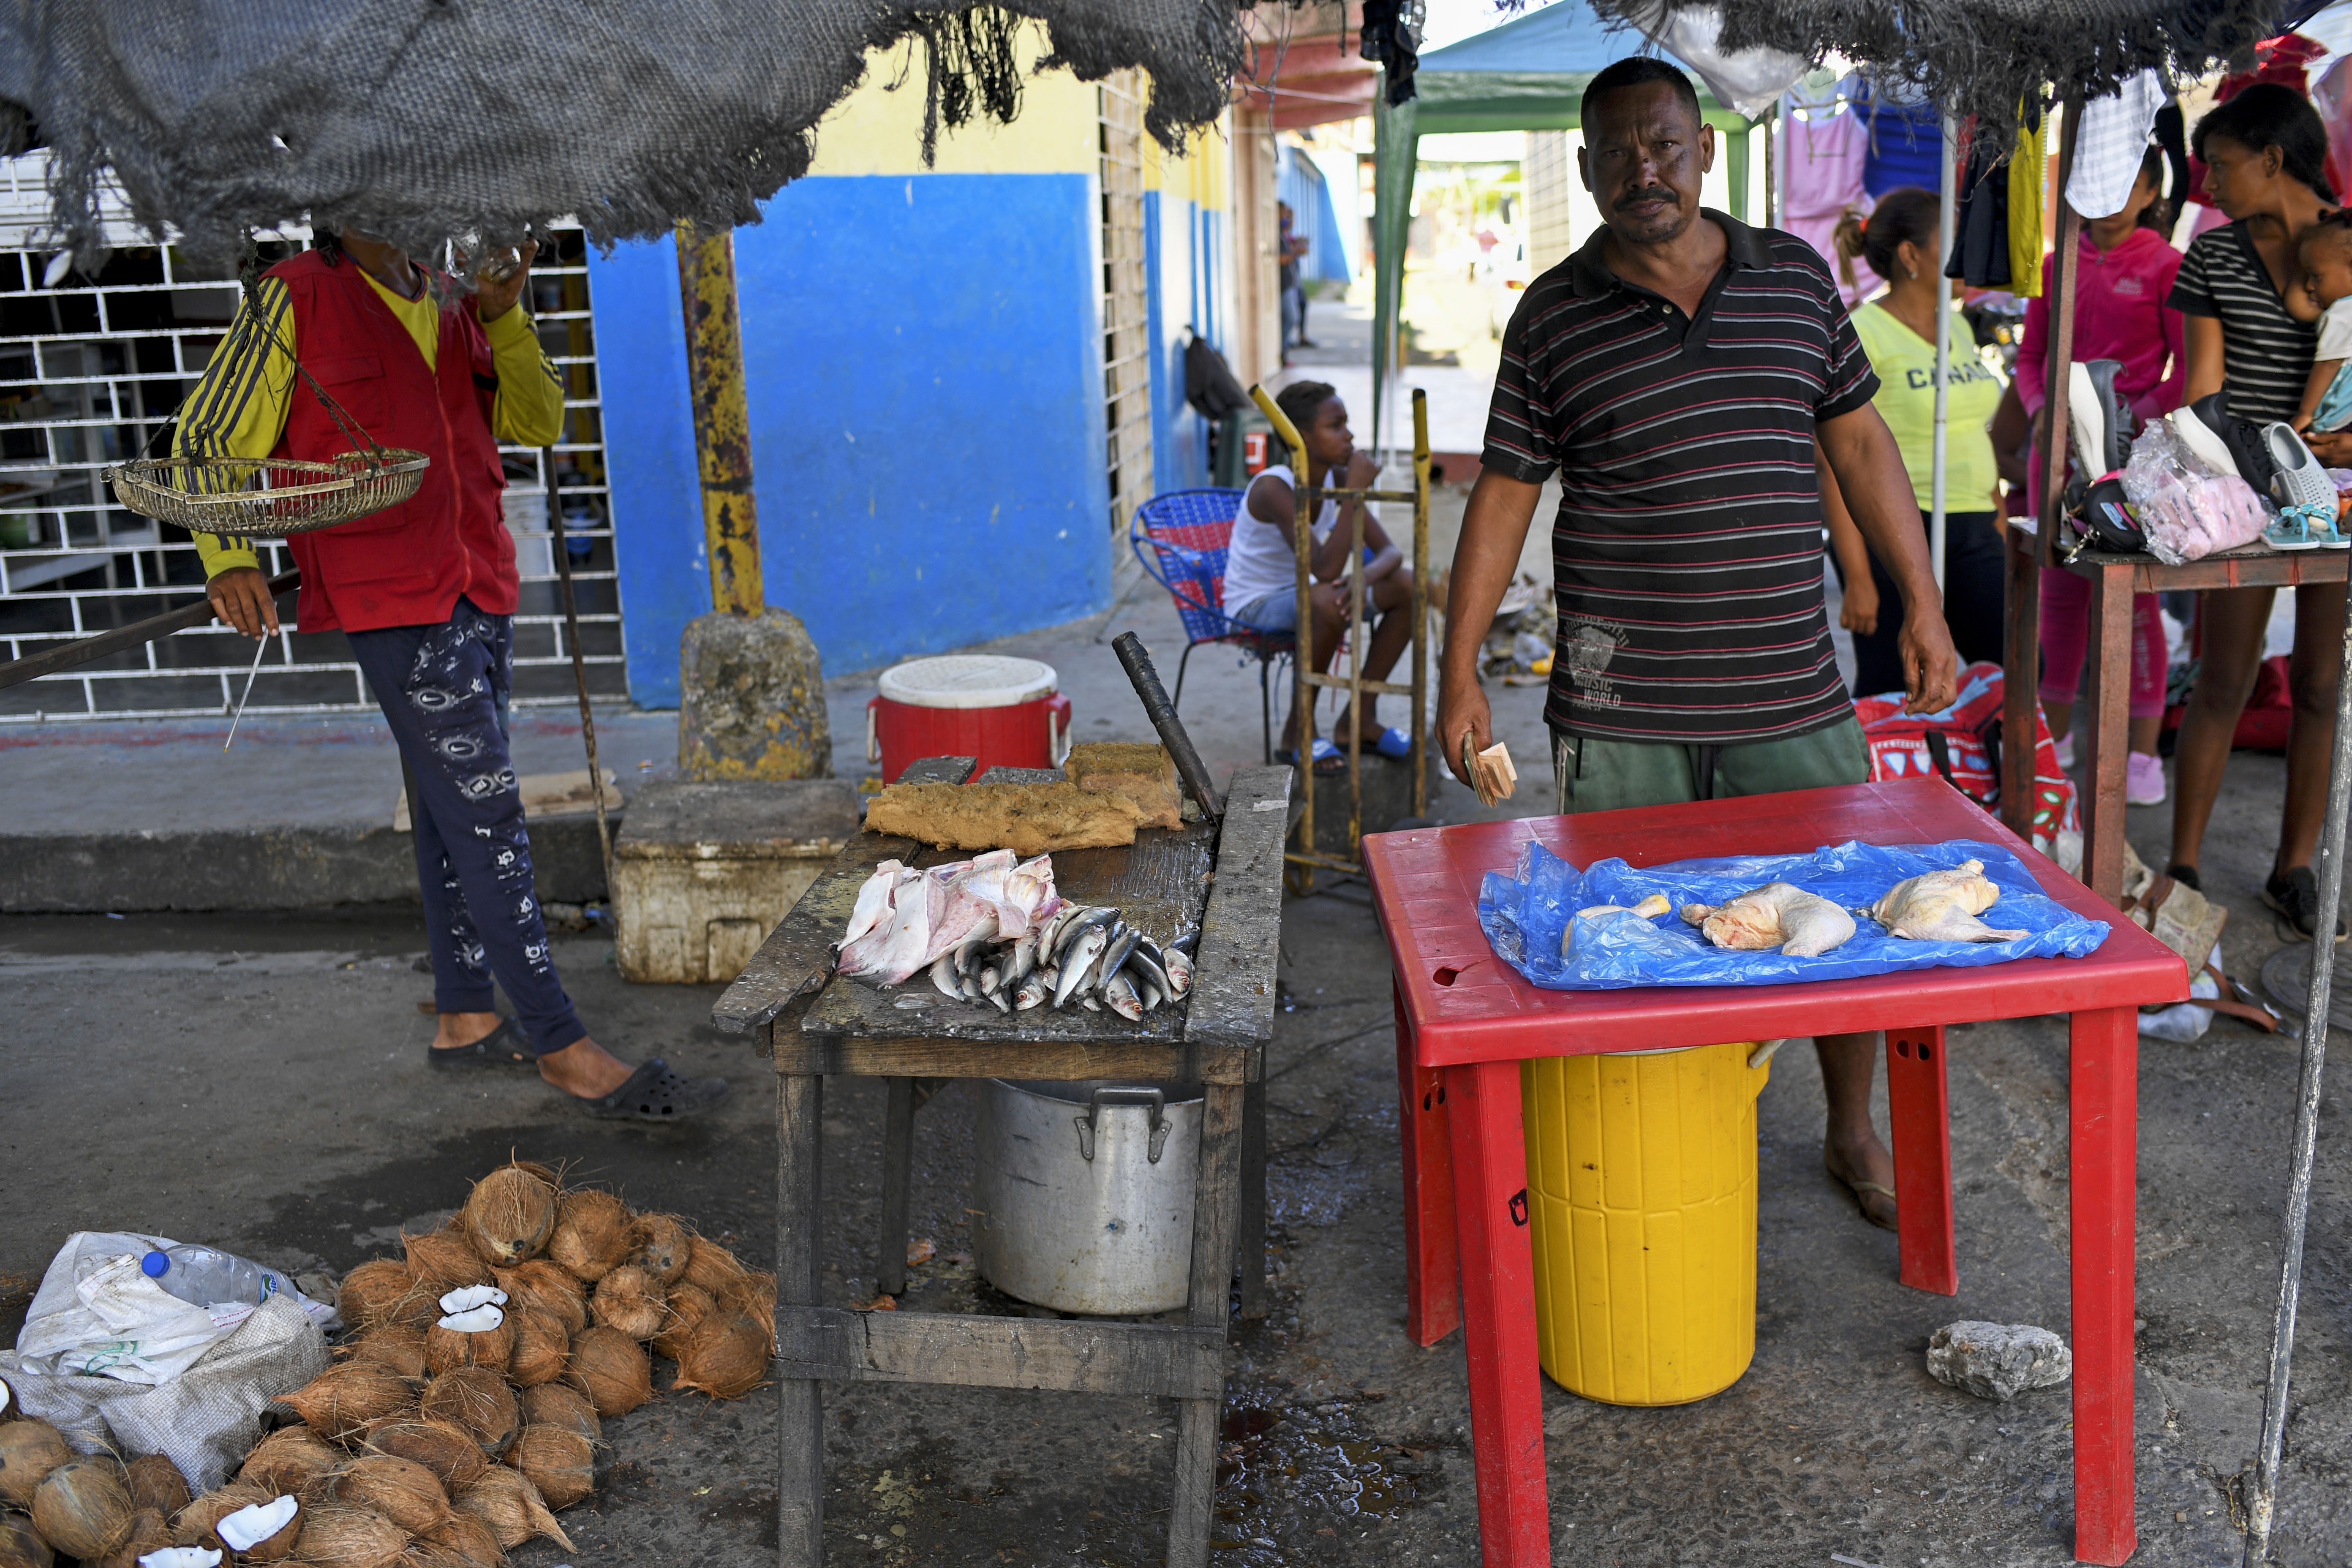 Comprar alimentos más baratos, otra razón para el peligroso viaje de Venezuela a Trinidad y Tobago